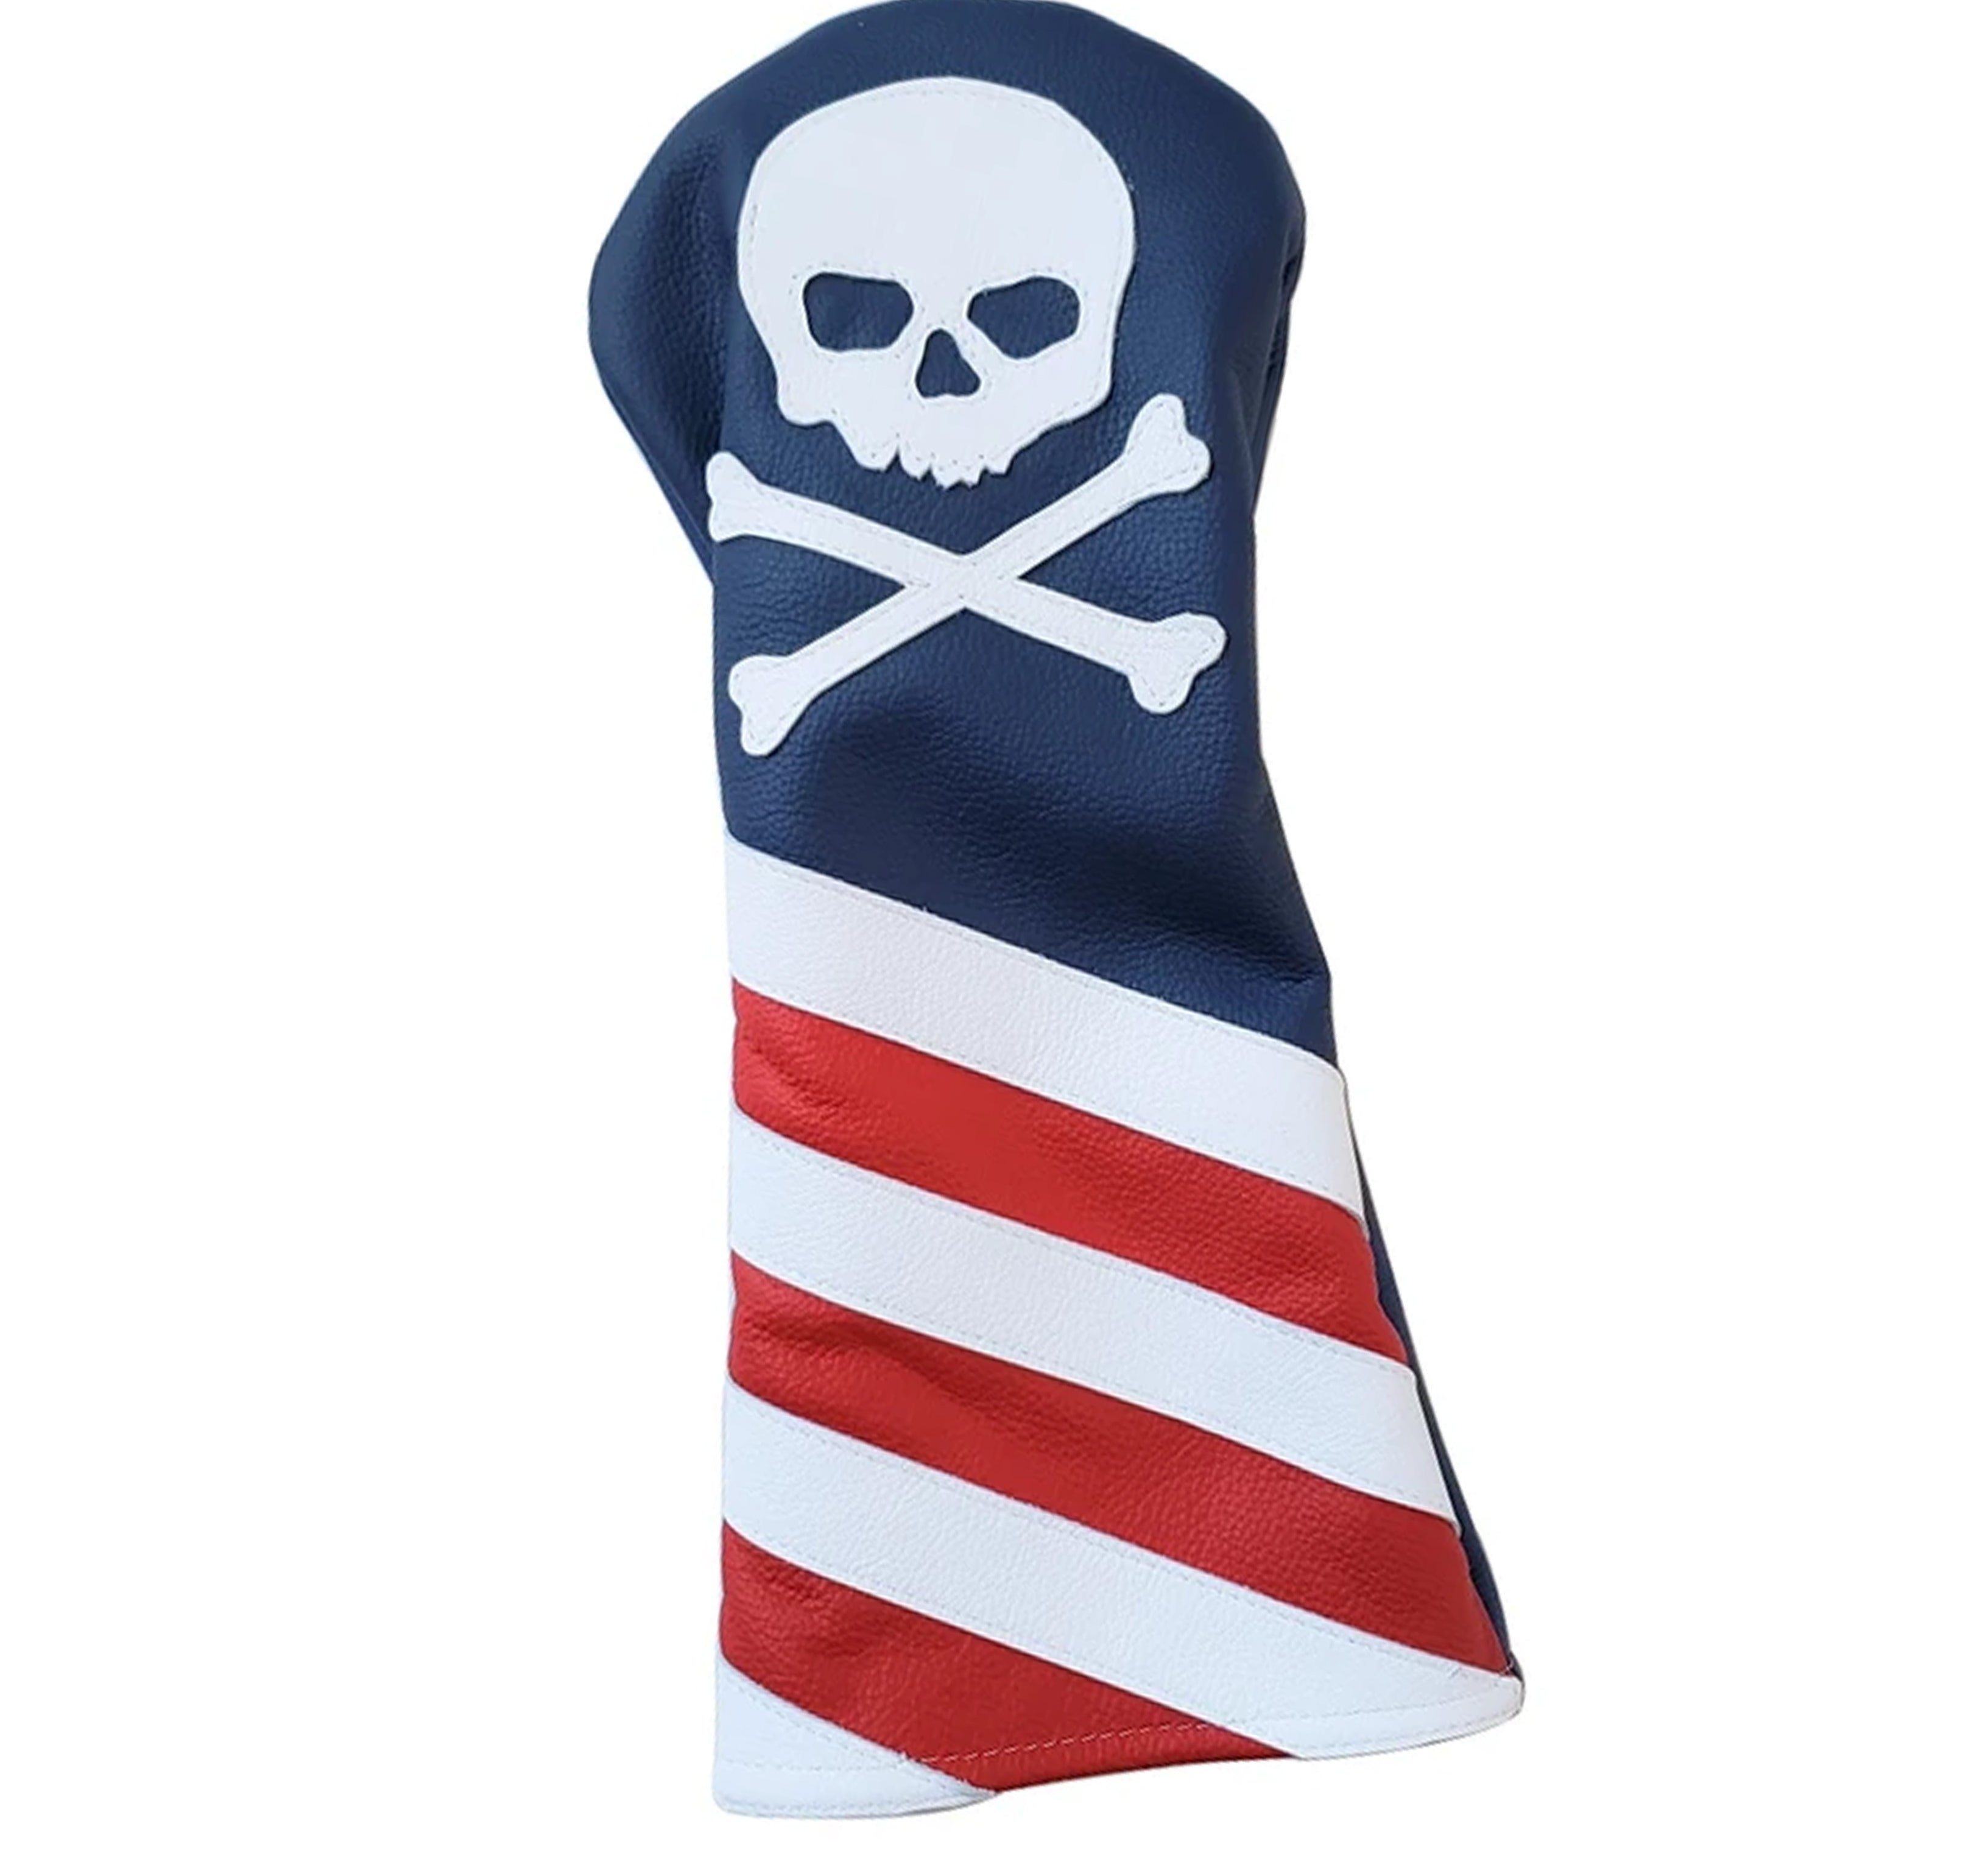 The USA Flag Skull & Bones Headcover - Robert Mark Golf